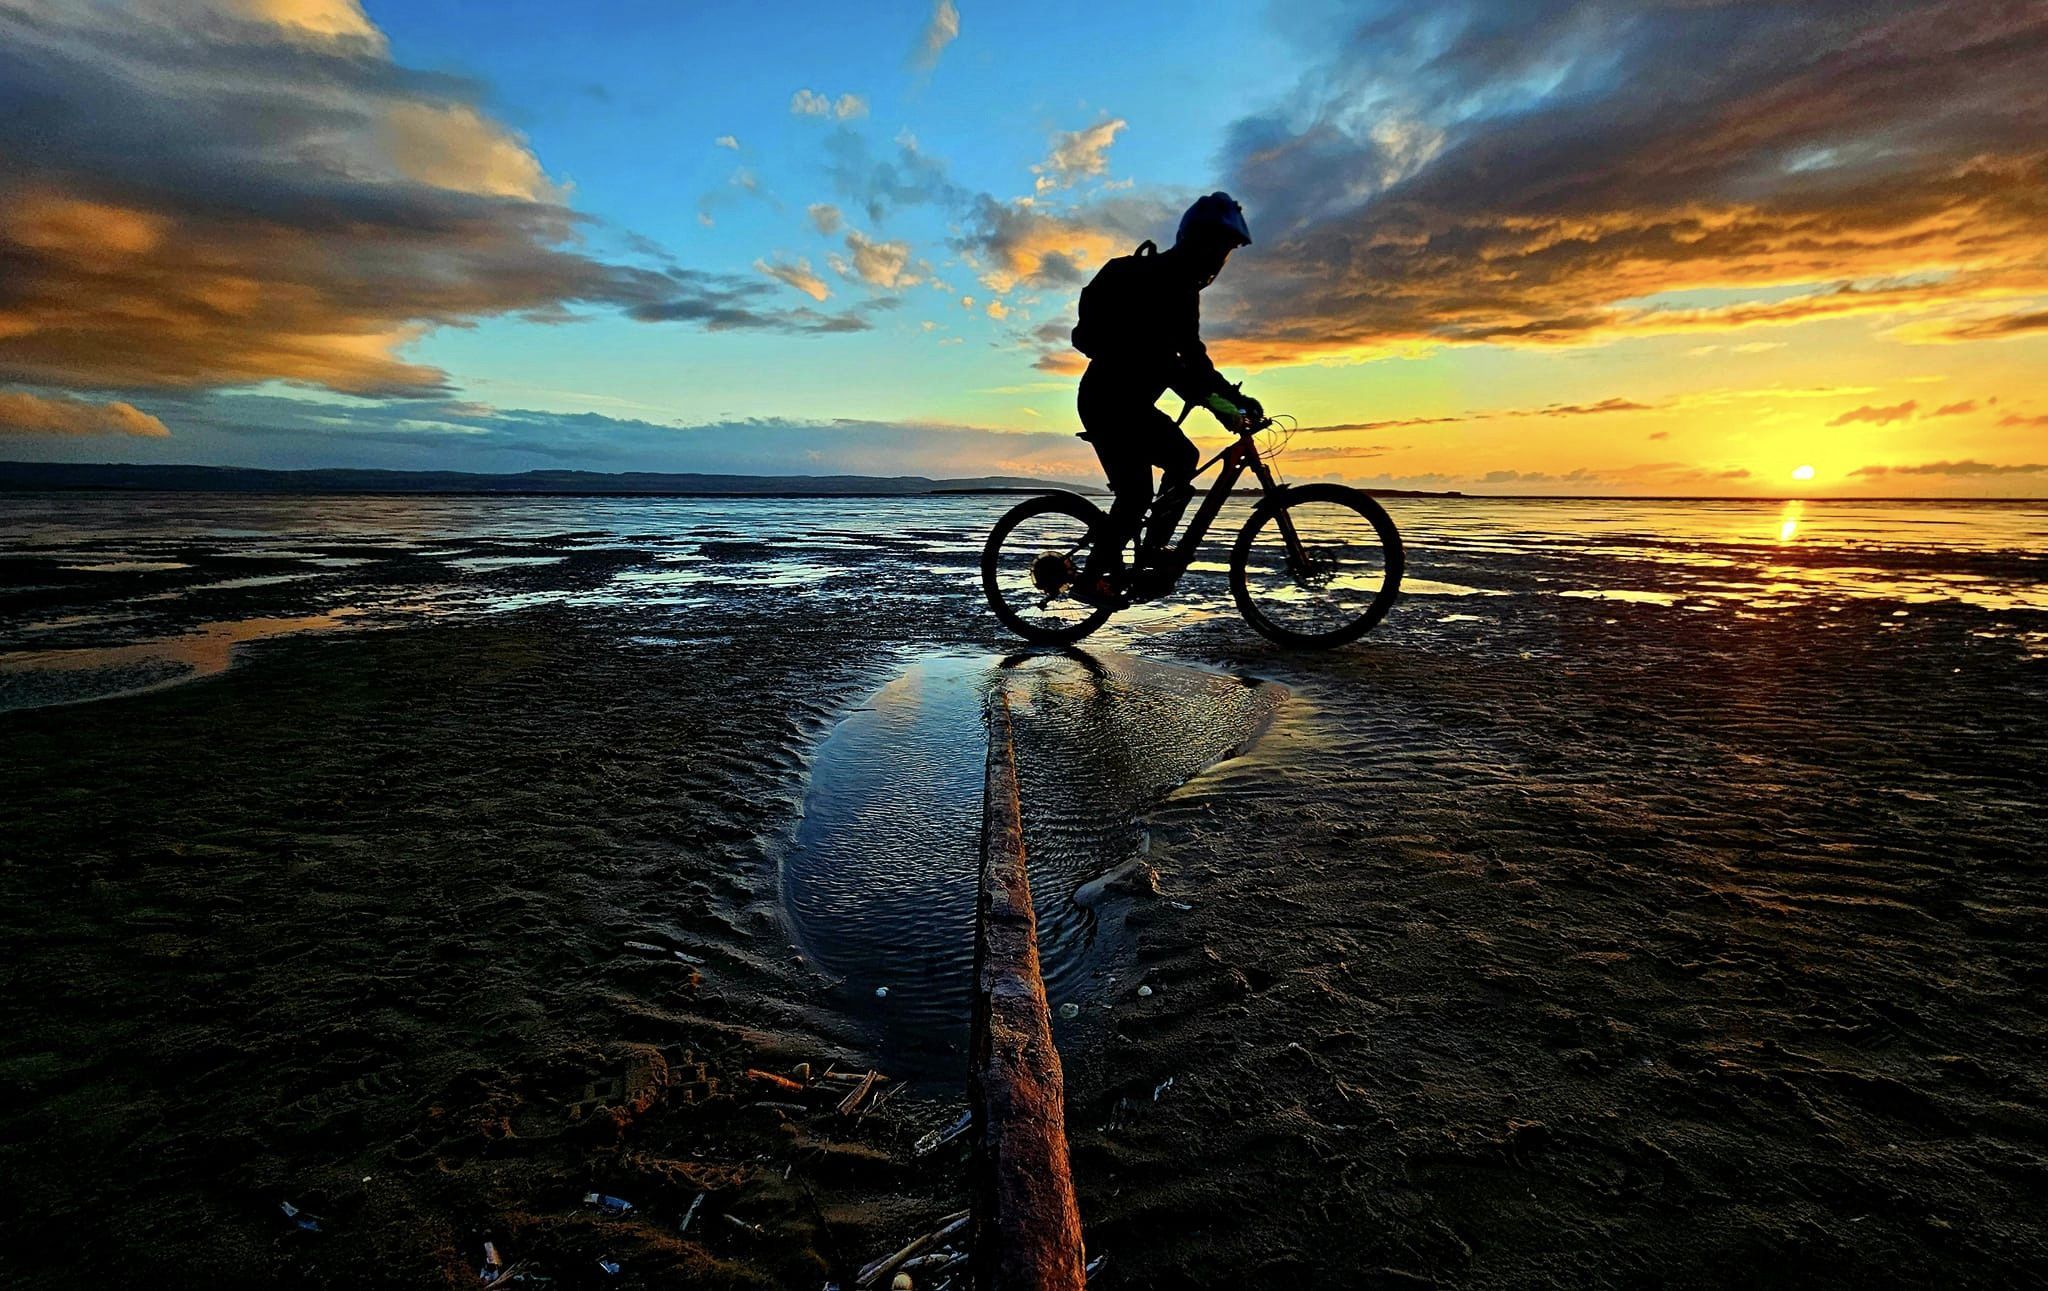 Sunset rider by Chris Britton